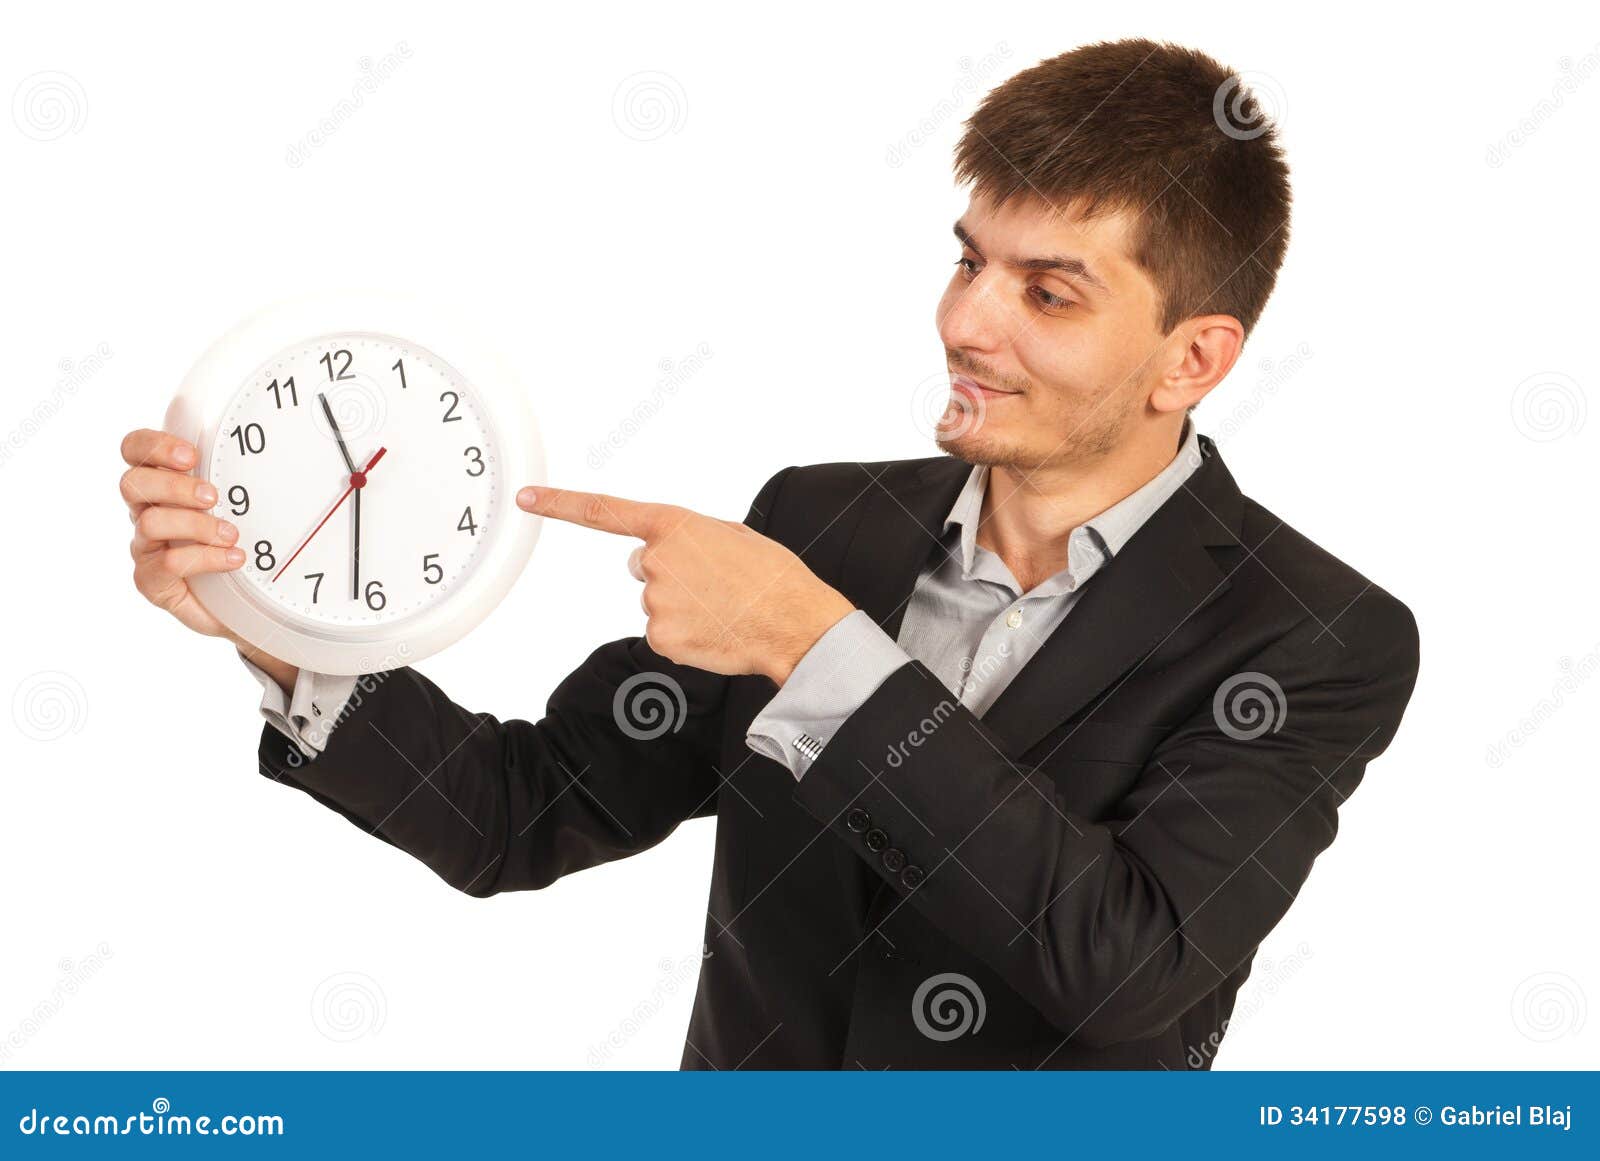 executive man indicate to clock